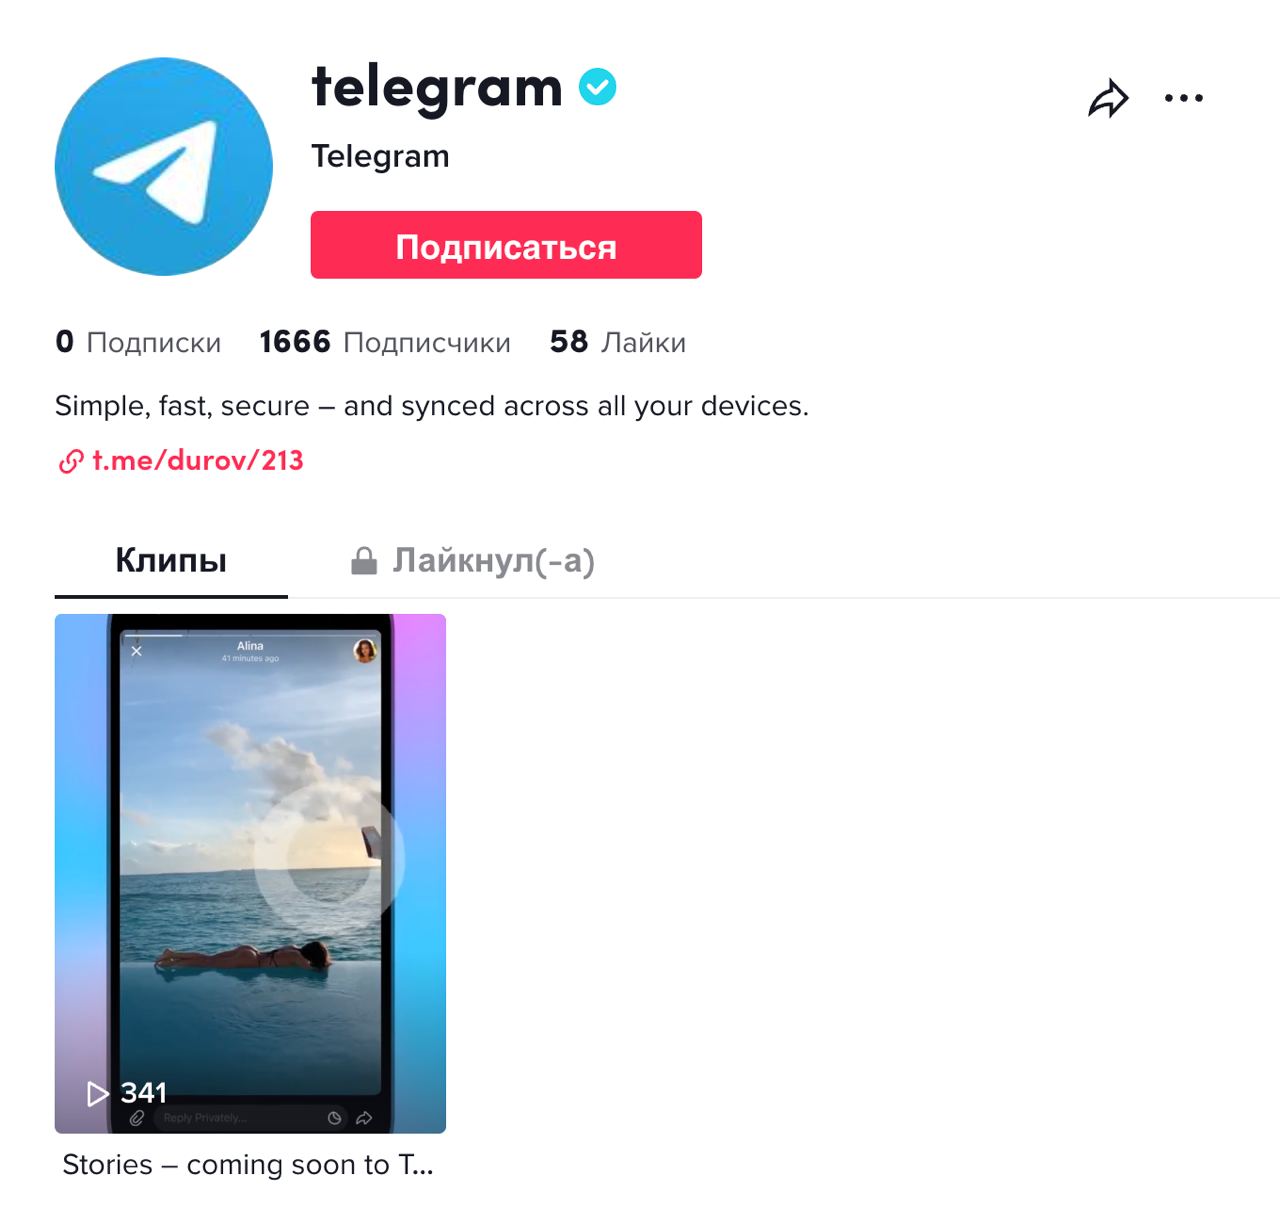 Купить аккаунты телеграмм для спама фото 69